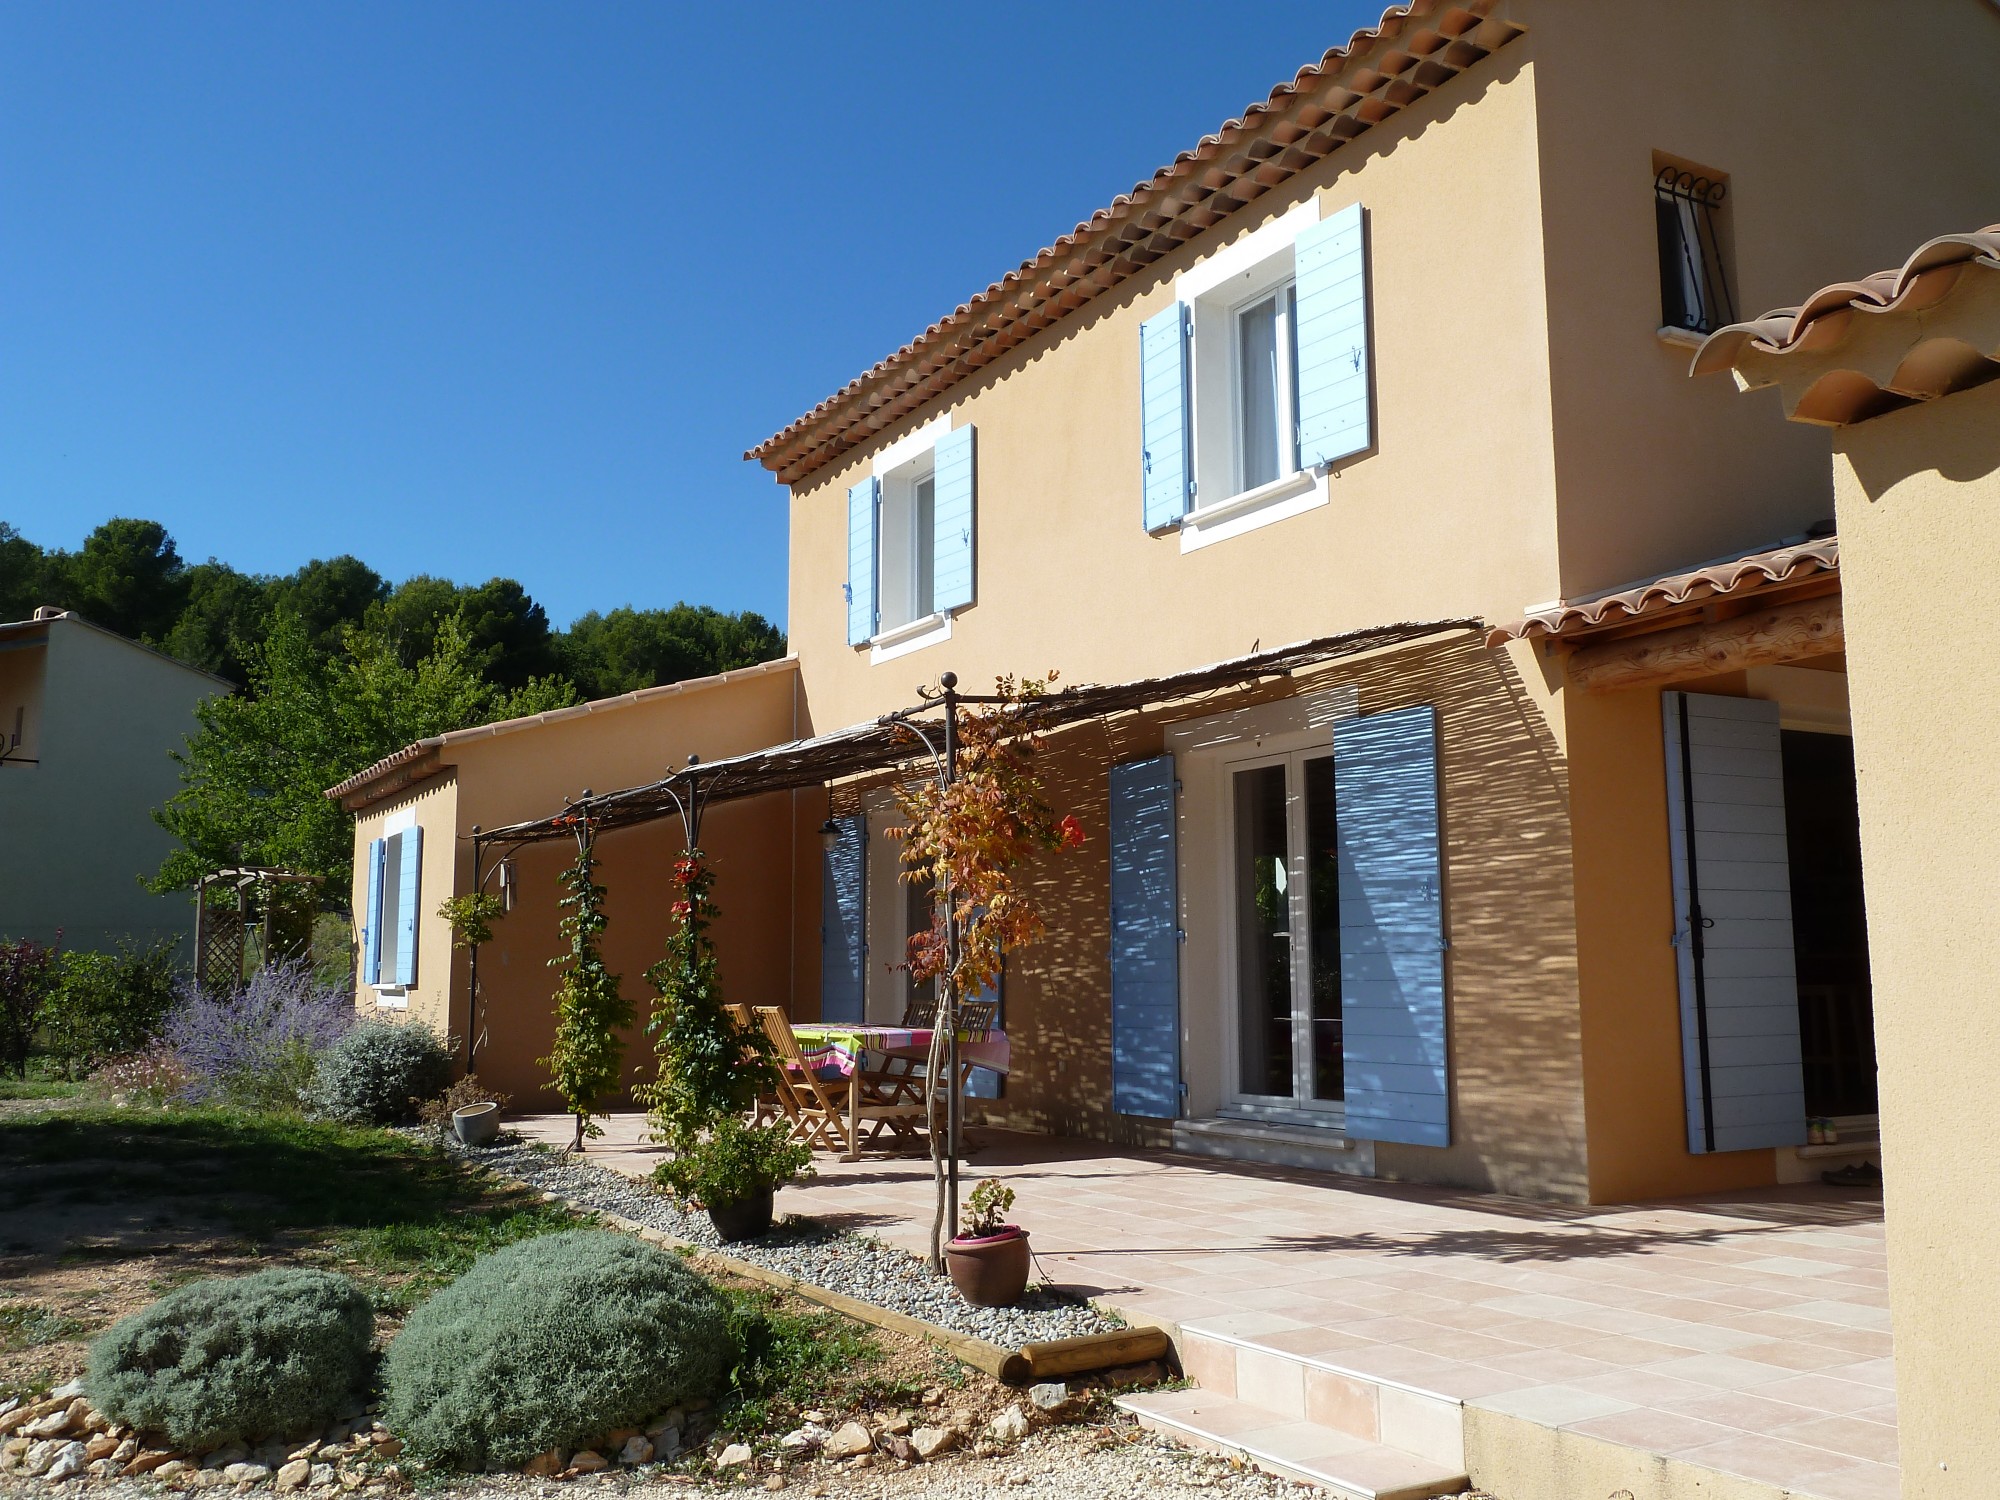 Villa traditionnelle dans le style provençal avec terrasse et tonnelle